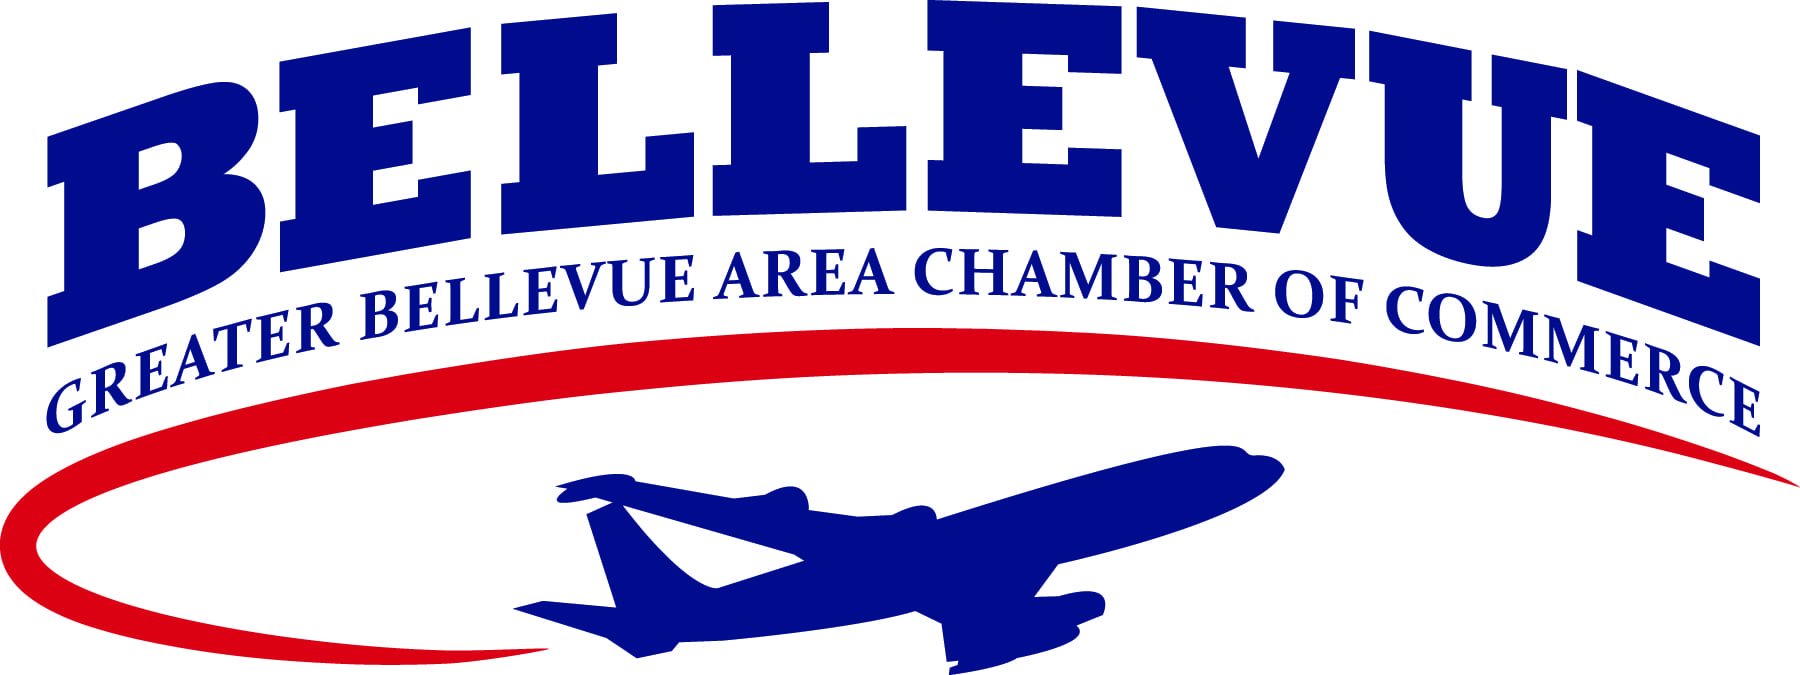 Bellevue, NE Chamber of Commerce